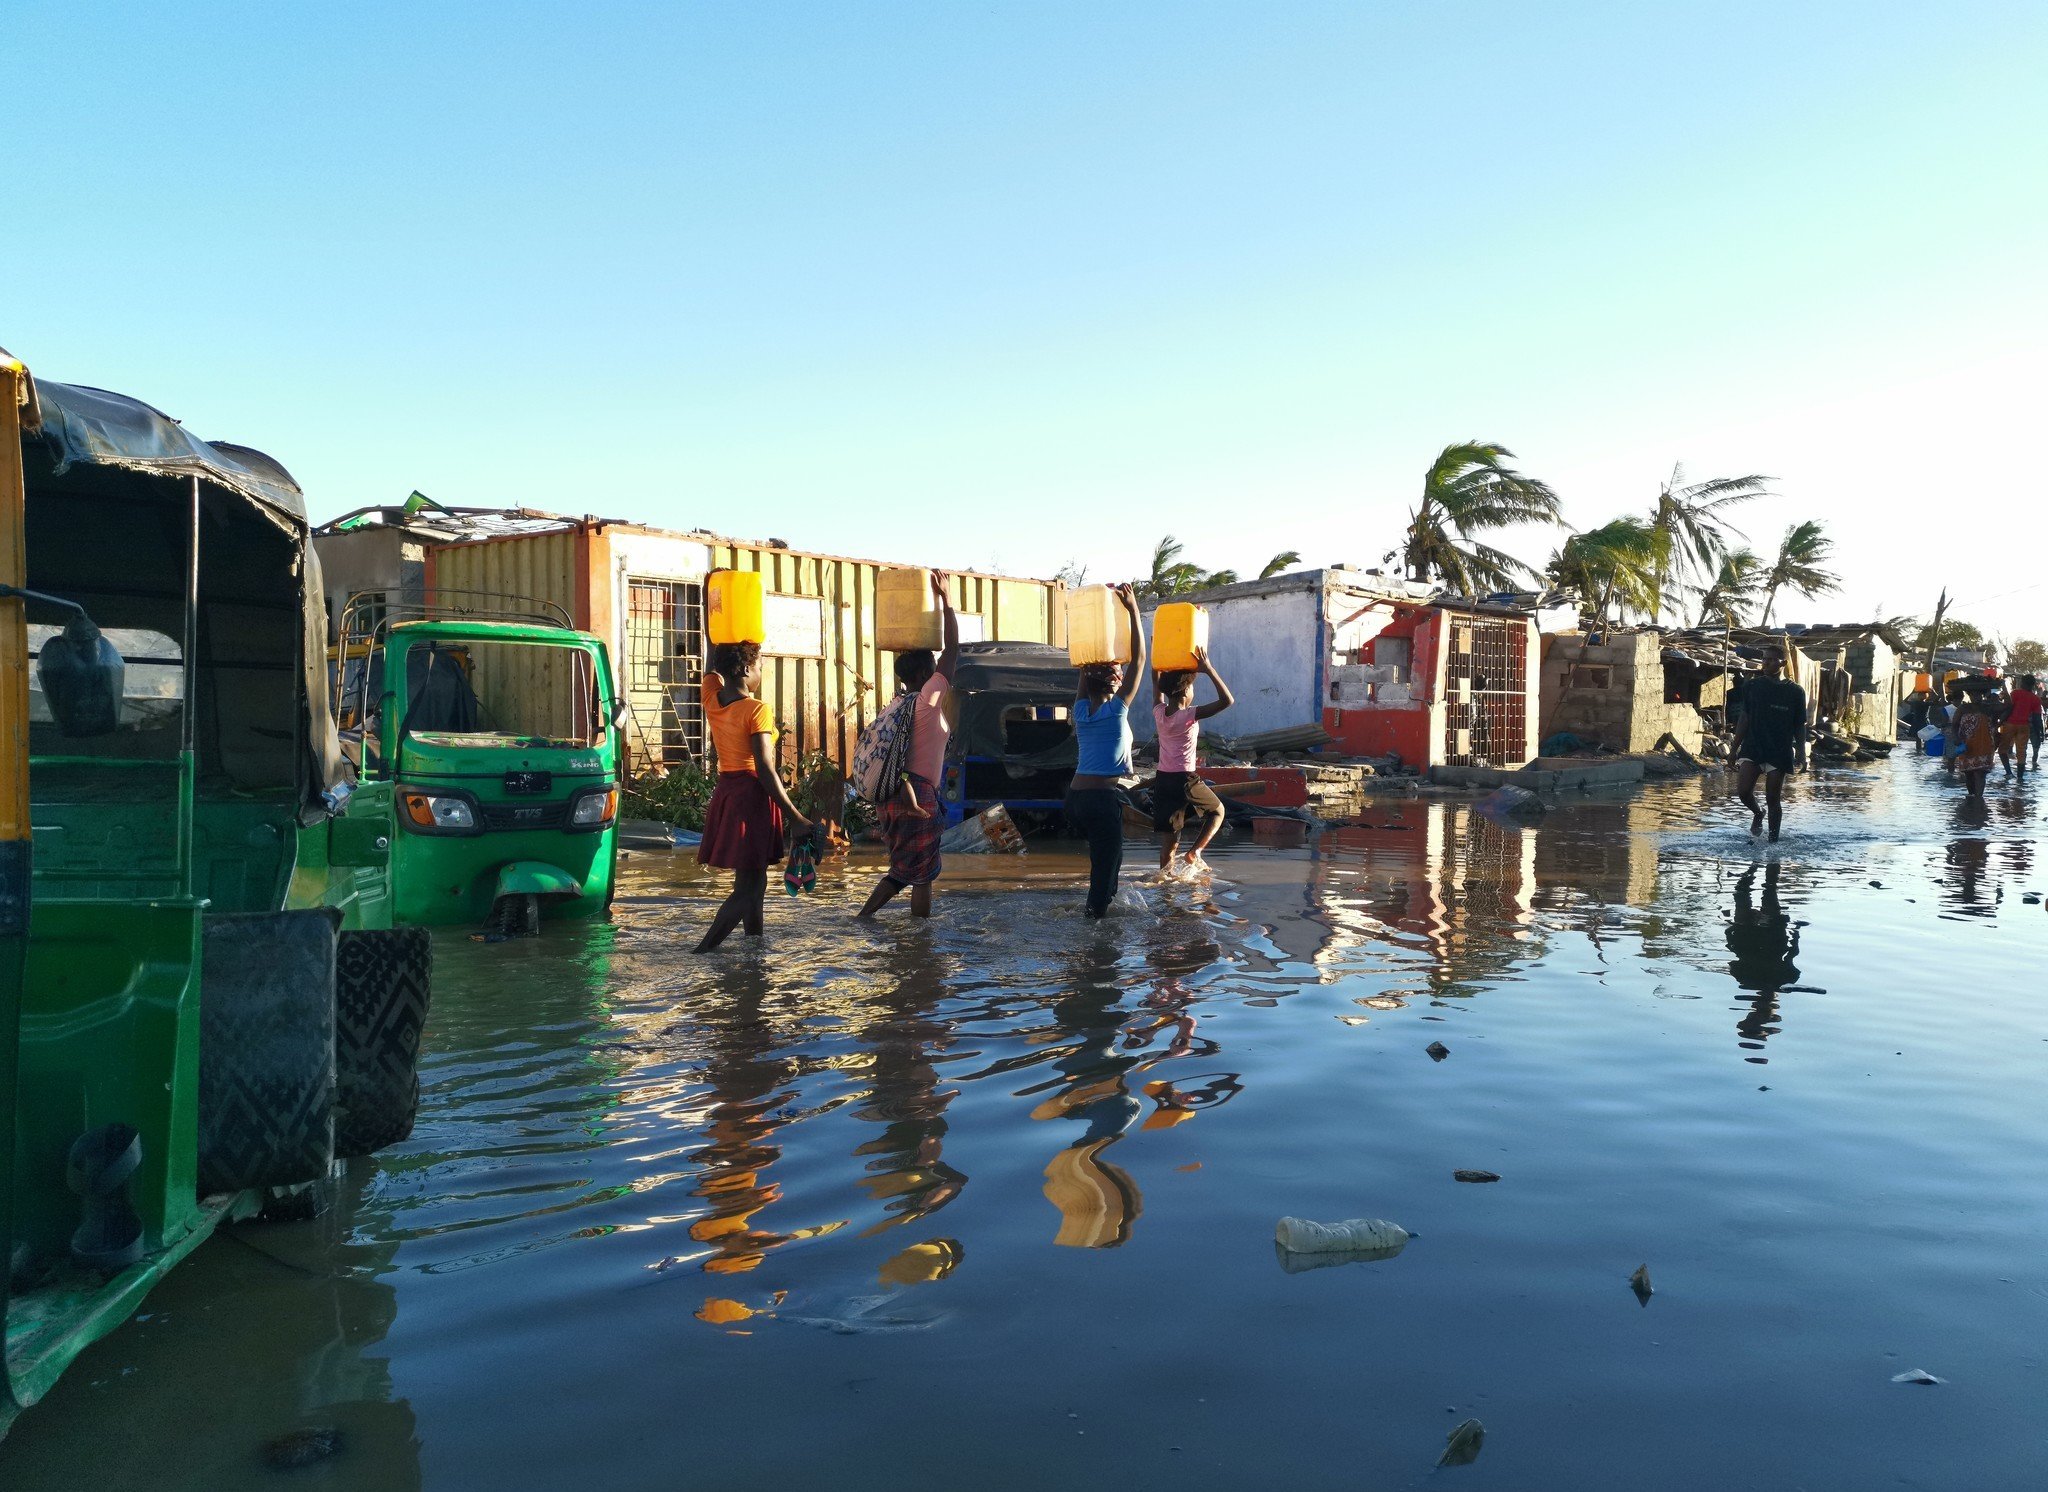 即使能夠幸運保住性命，但災民仍要面對傳染病爆發的威脅。在莫桑比克的港口城市貝拉，連日的狂風暴雨令當地多區缺水斷電。河道及水源被洪水污染，令災民感染霍亂和瘧疾等水傳播疾病的風險增加。（攝影：Sergio Zimba / 樂施會）